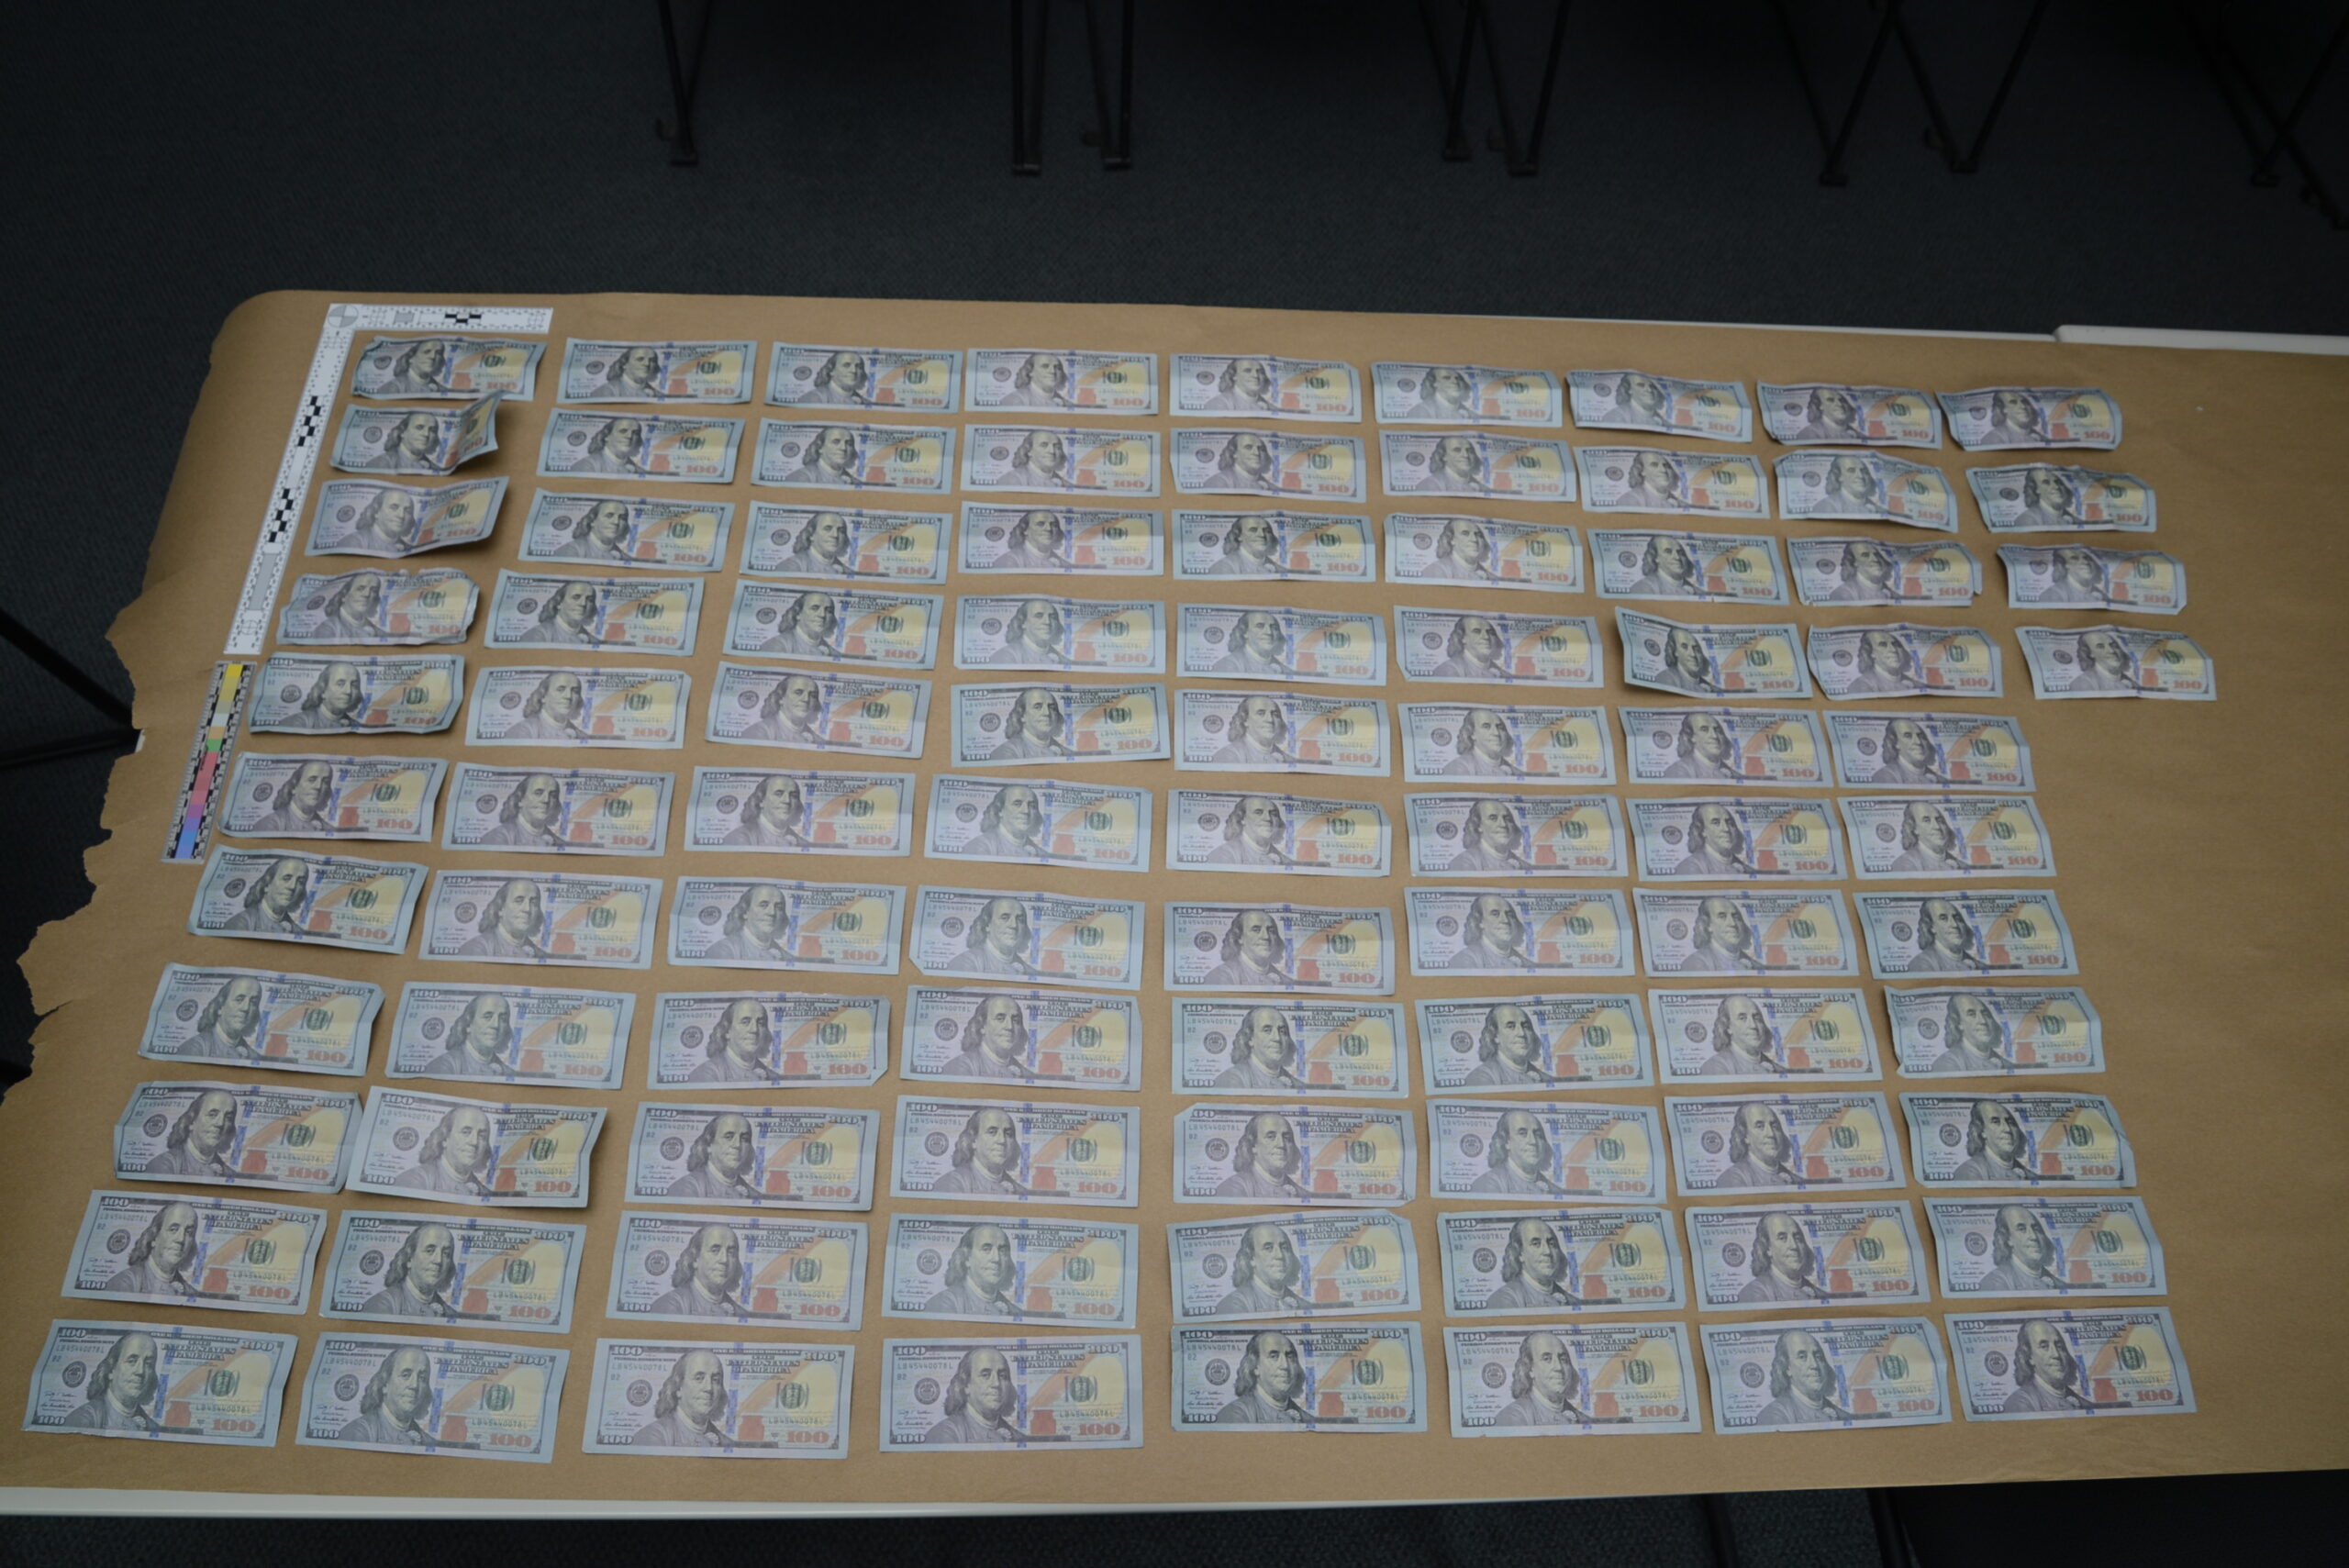 Police make arrest in counterfeit money